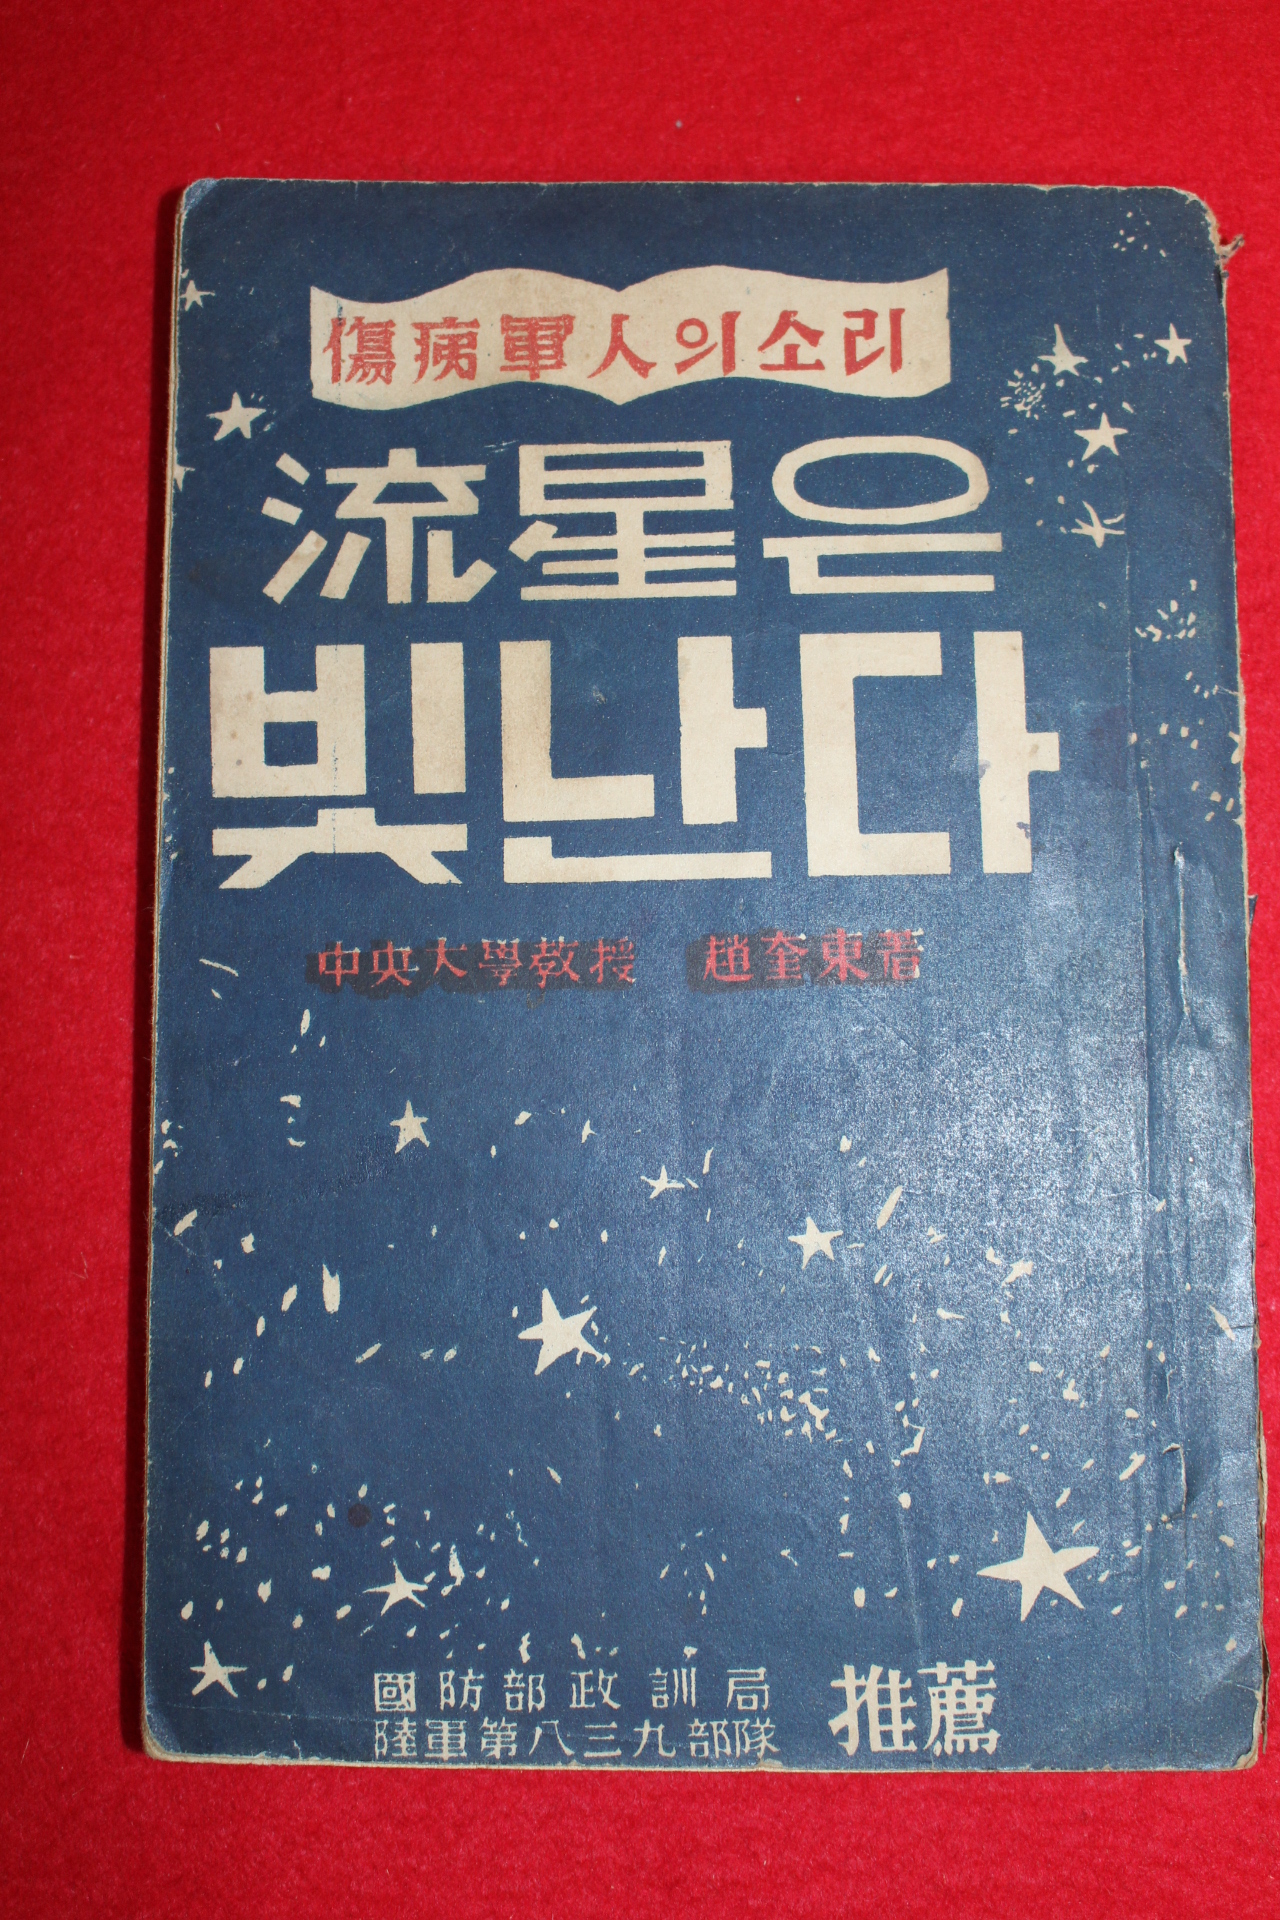 1951년 조규동(趙奎東) 유성은 빛난다